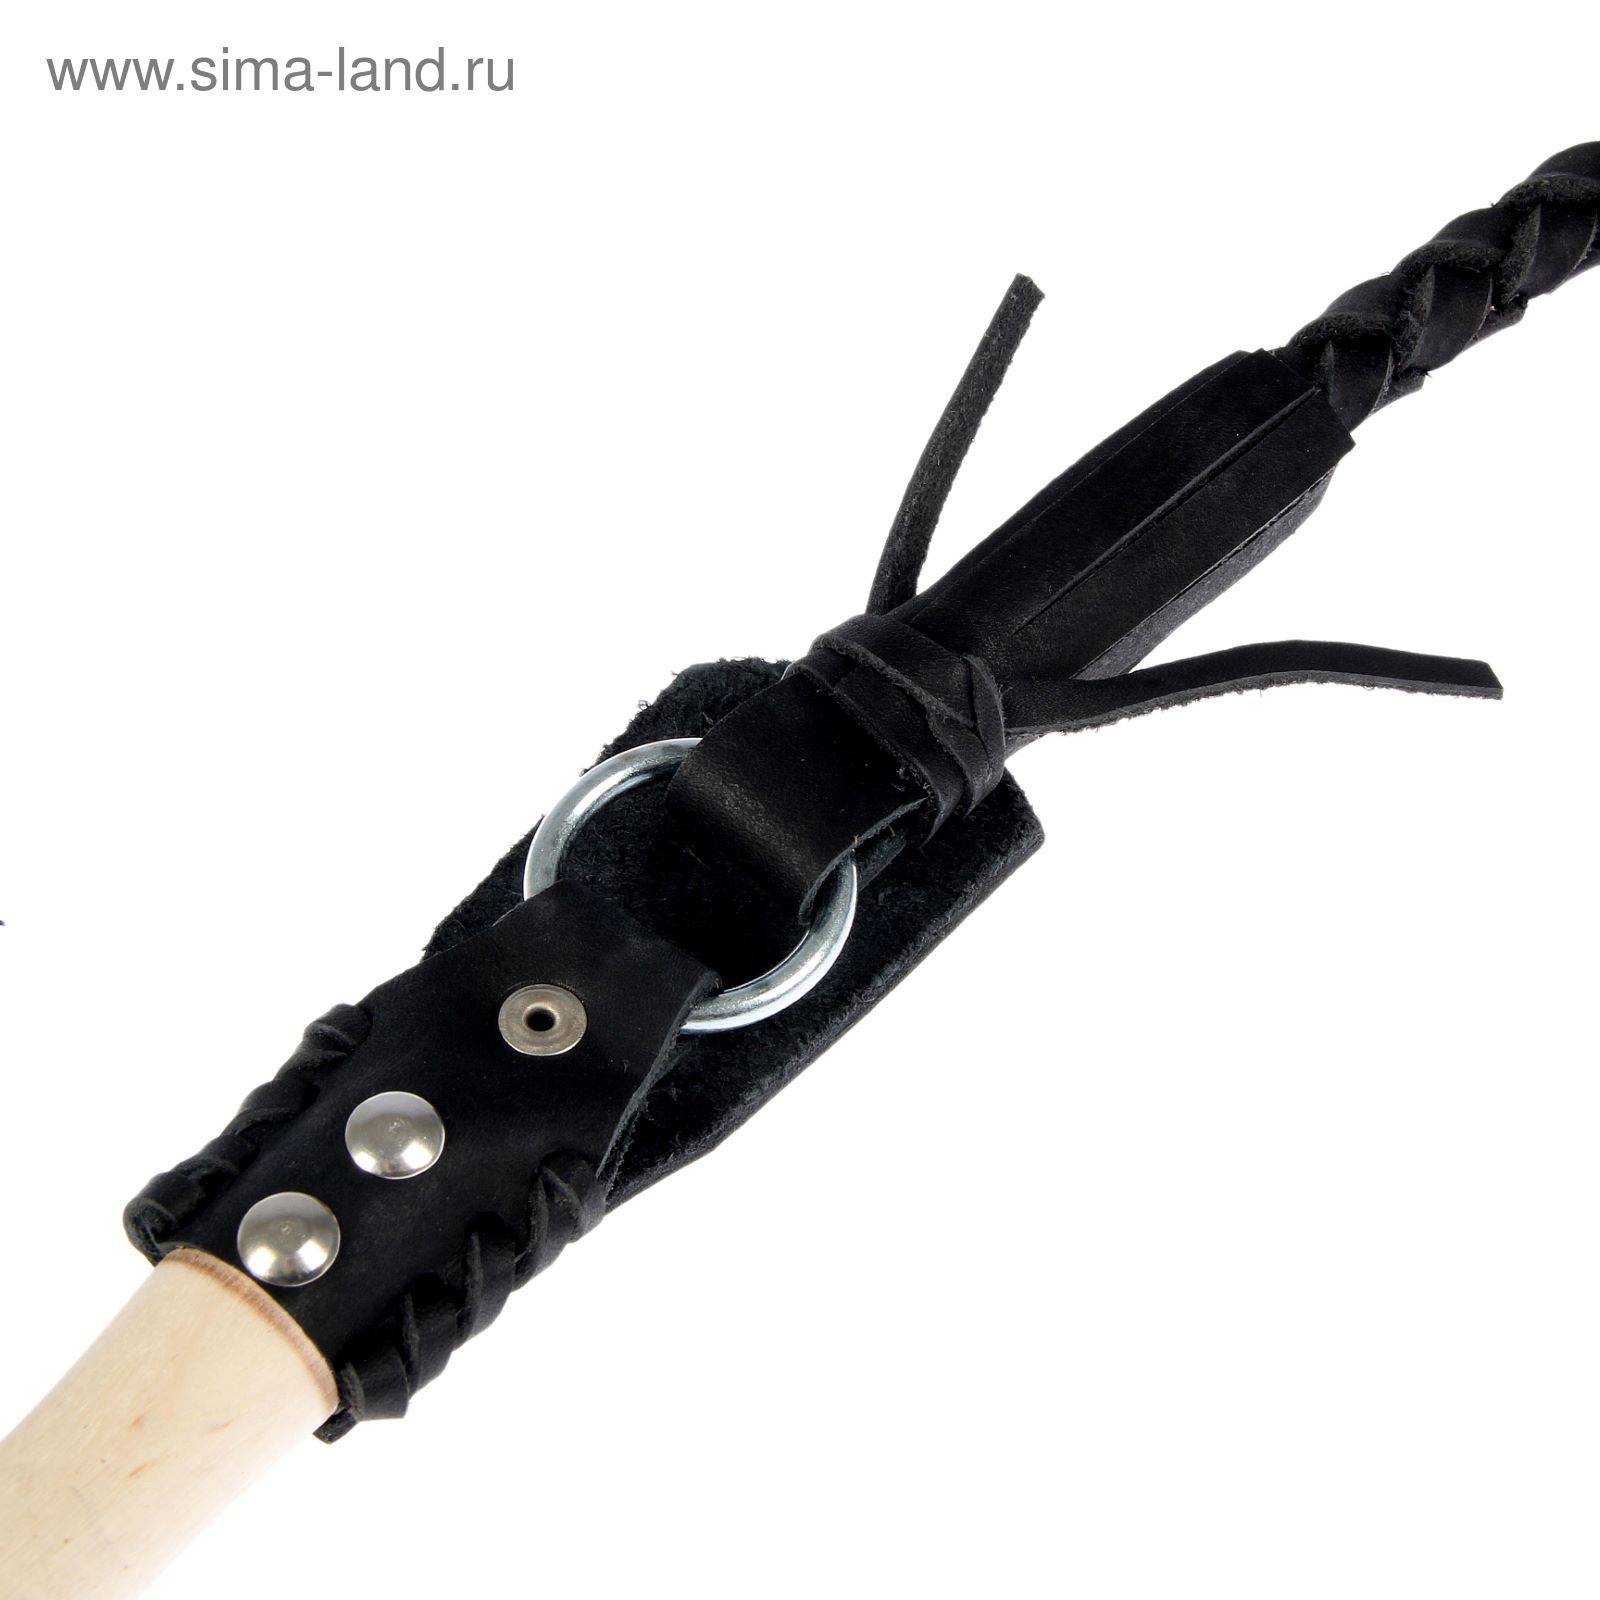 Нагайка Донская, ручка оплетена кожей, черная